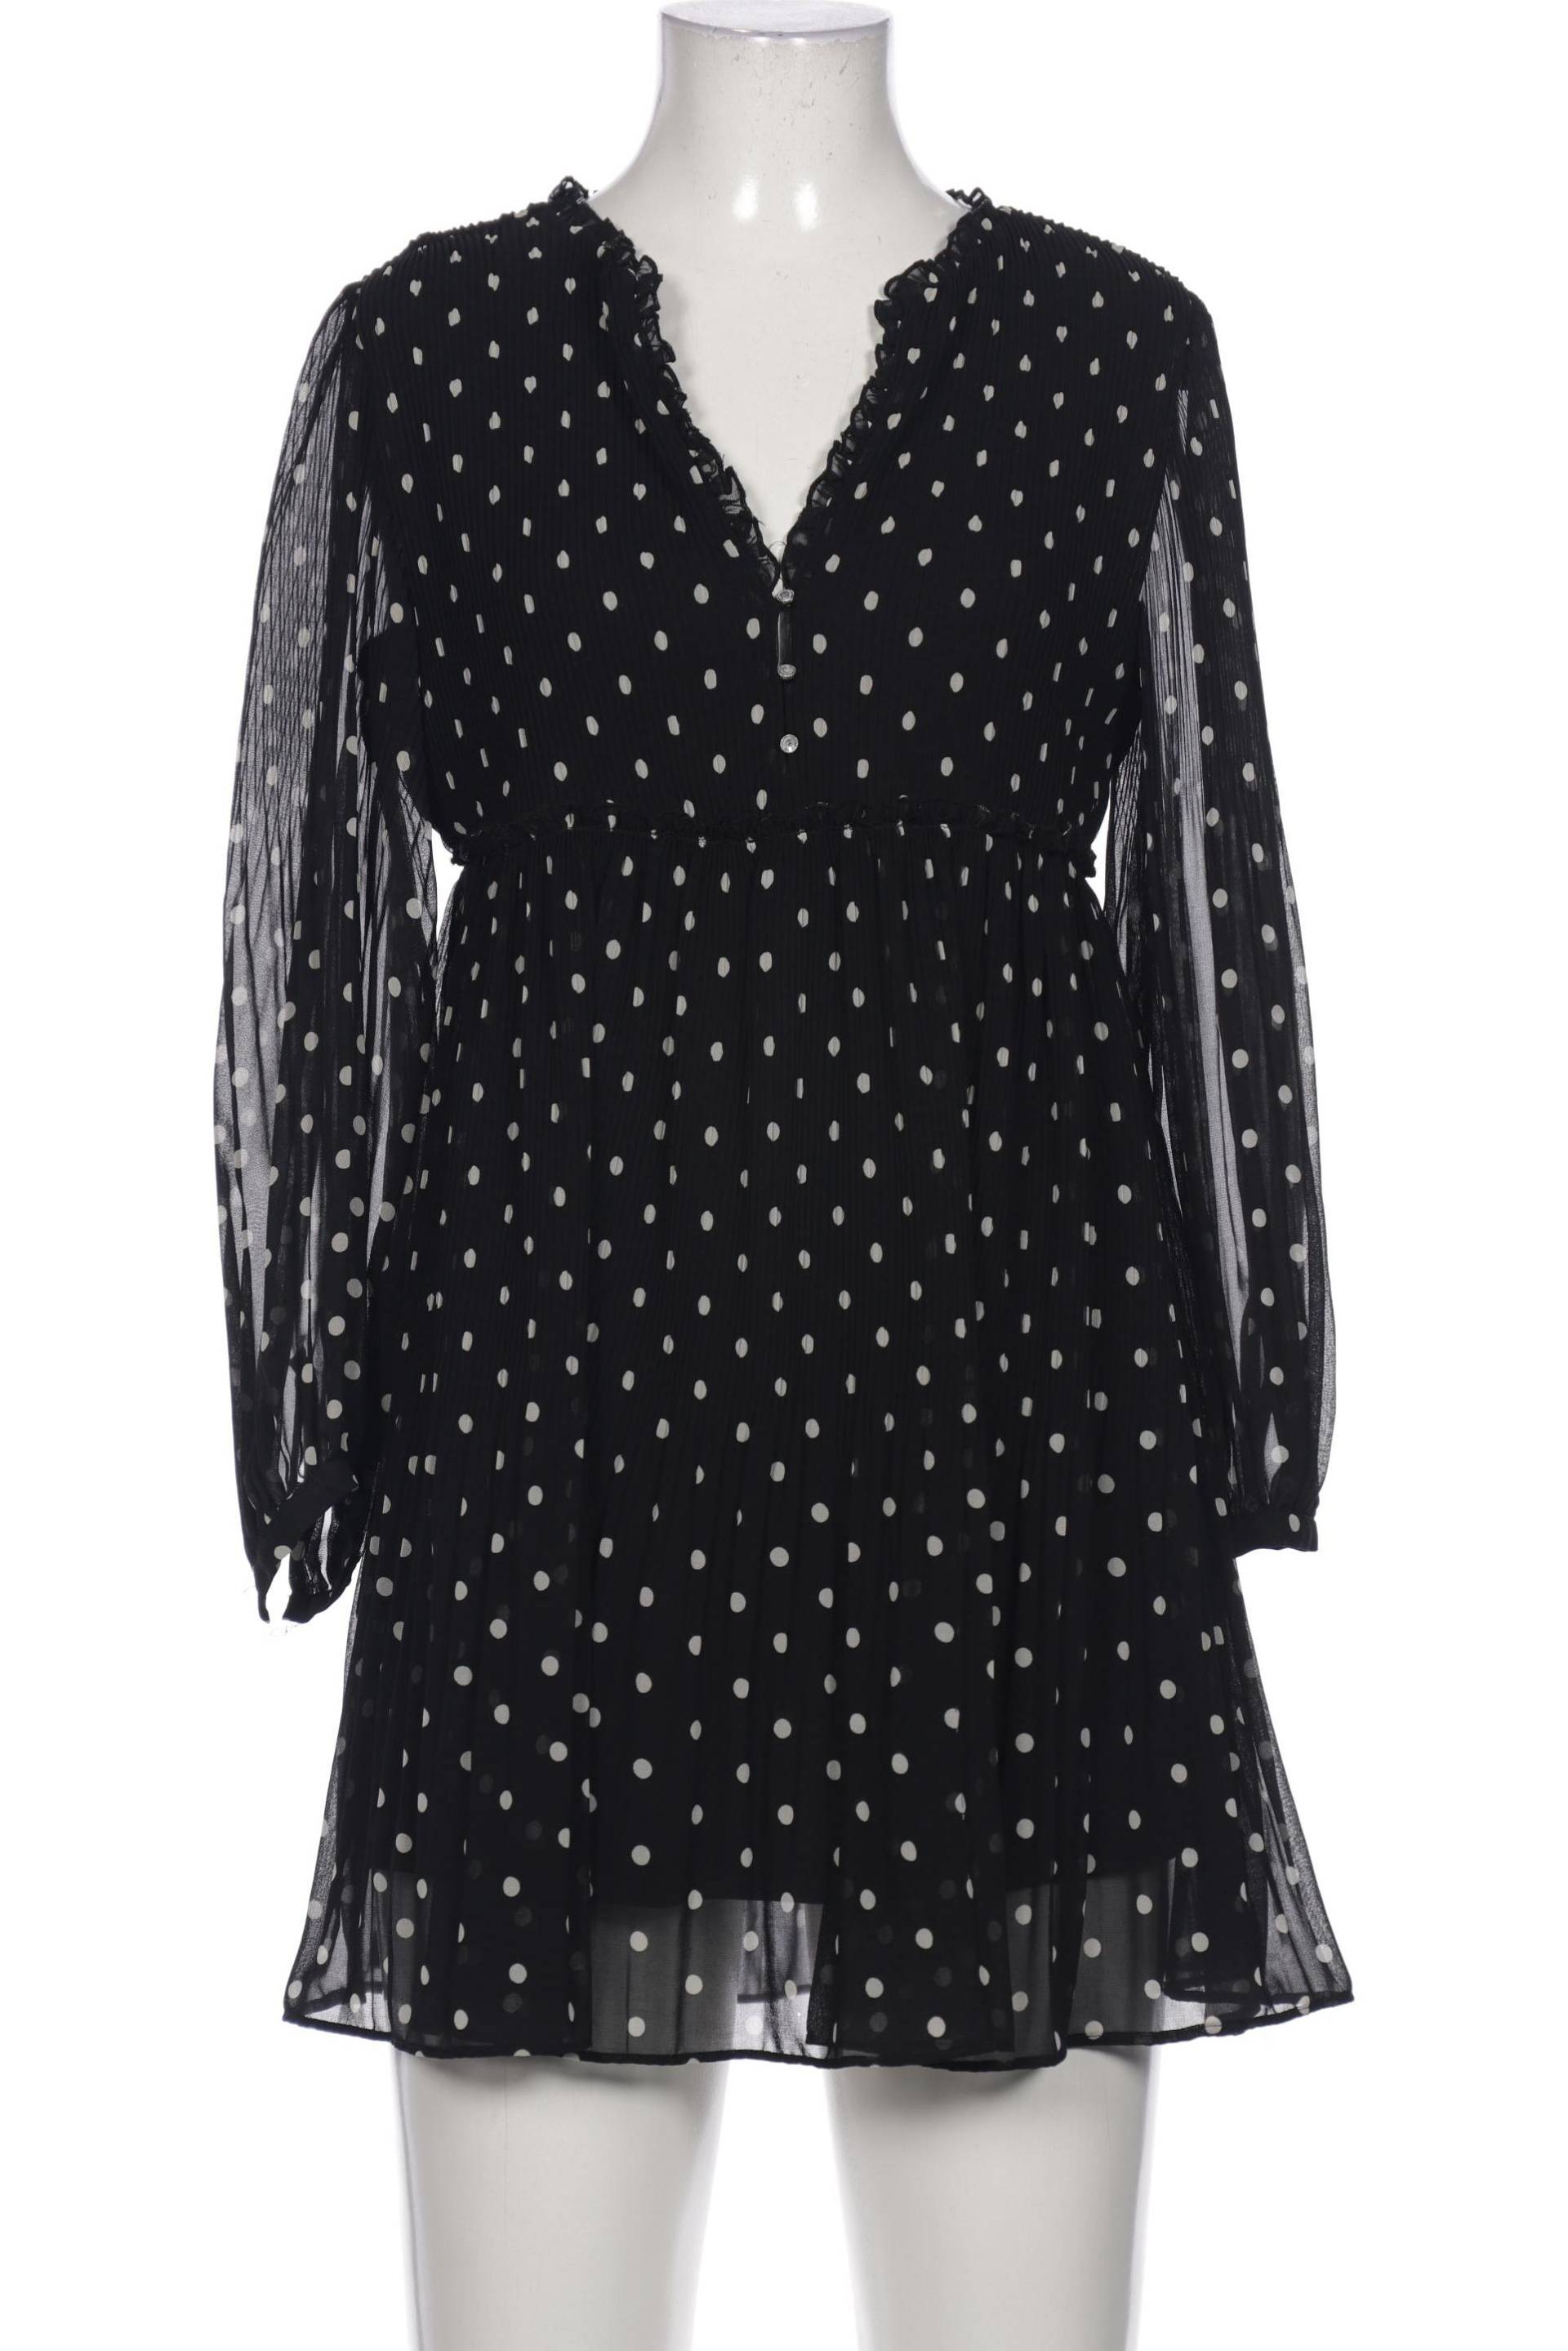 Zara Damen Kleid, schwarz, Gr. 34 von ZARA